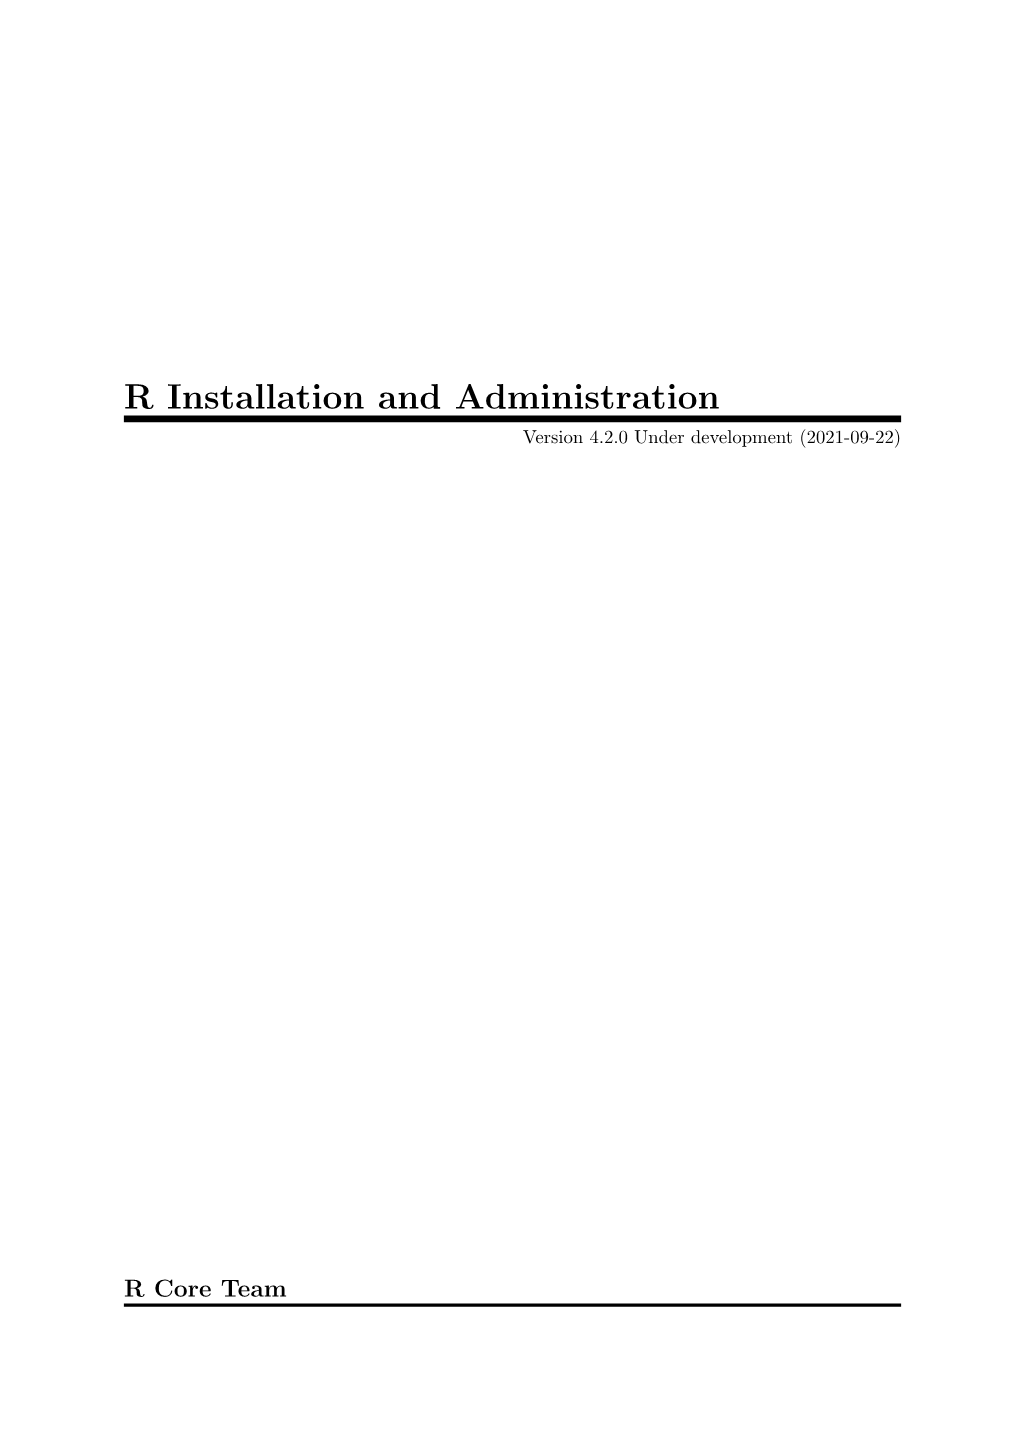 R Installation and Administration Version 4.2.0 Under Development (2021-09-22)